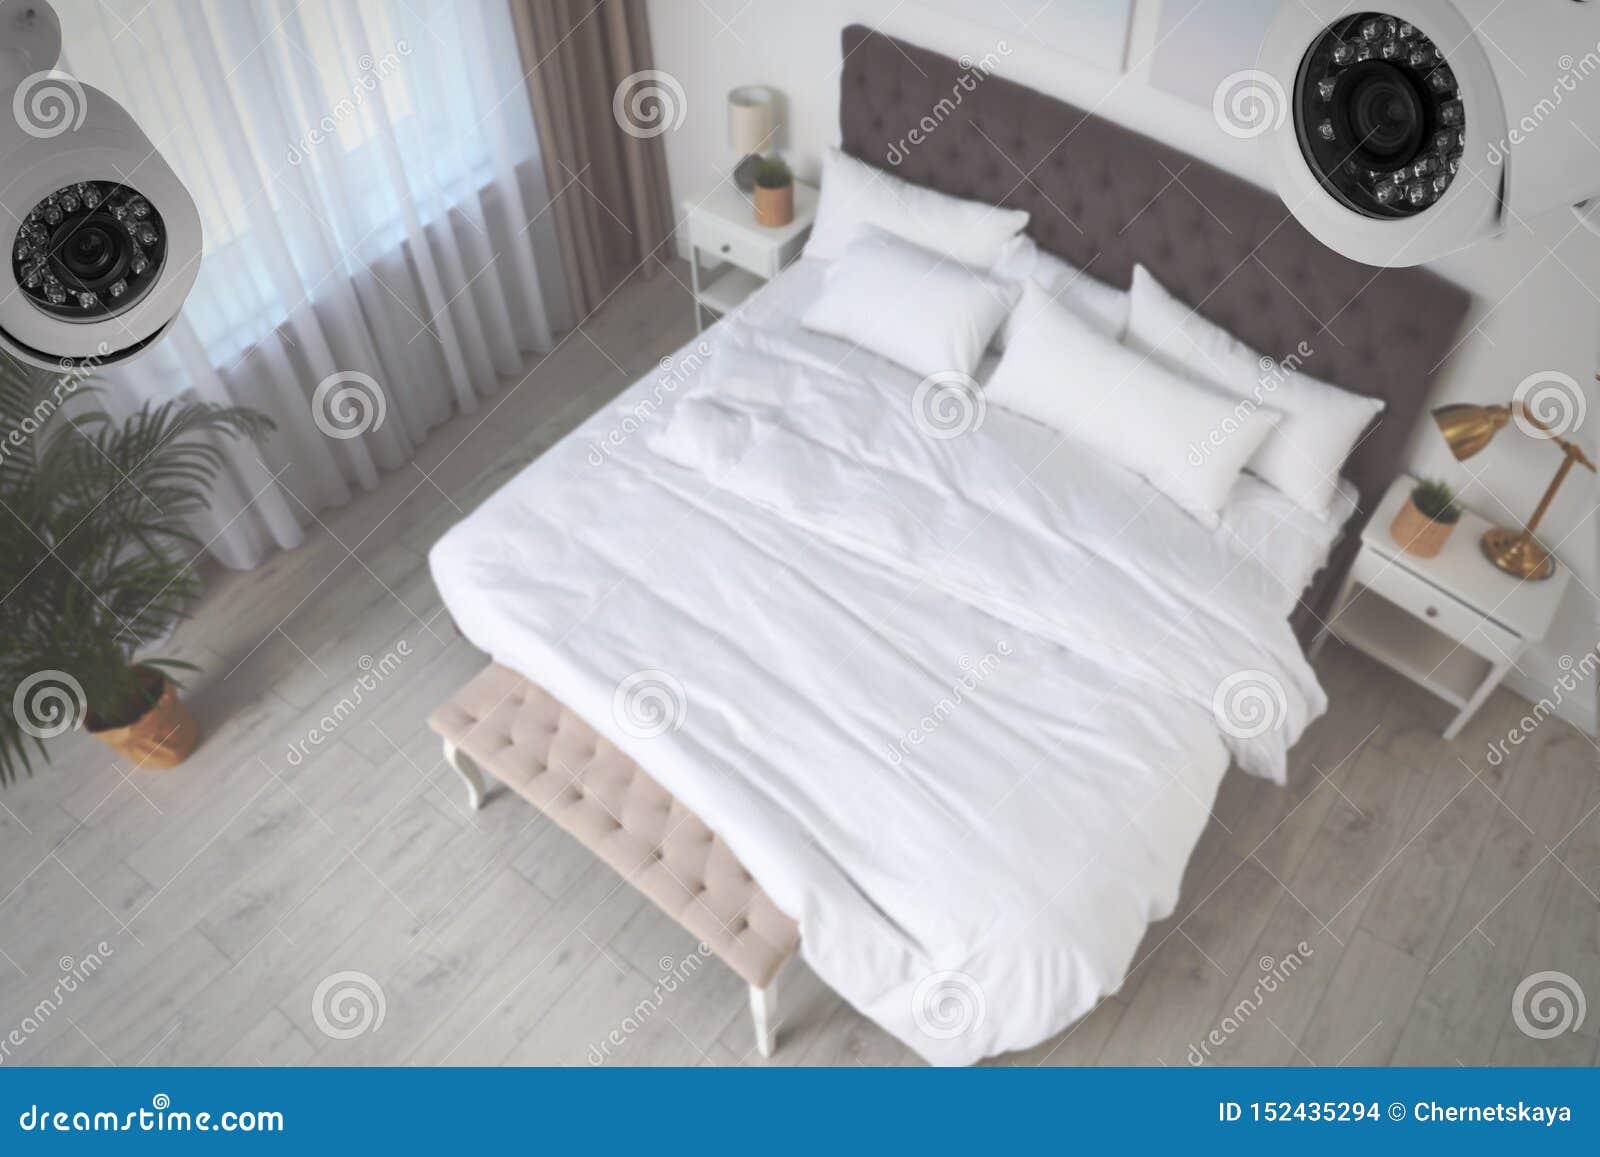 Bedroomcam